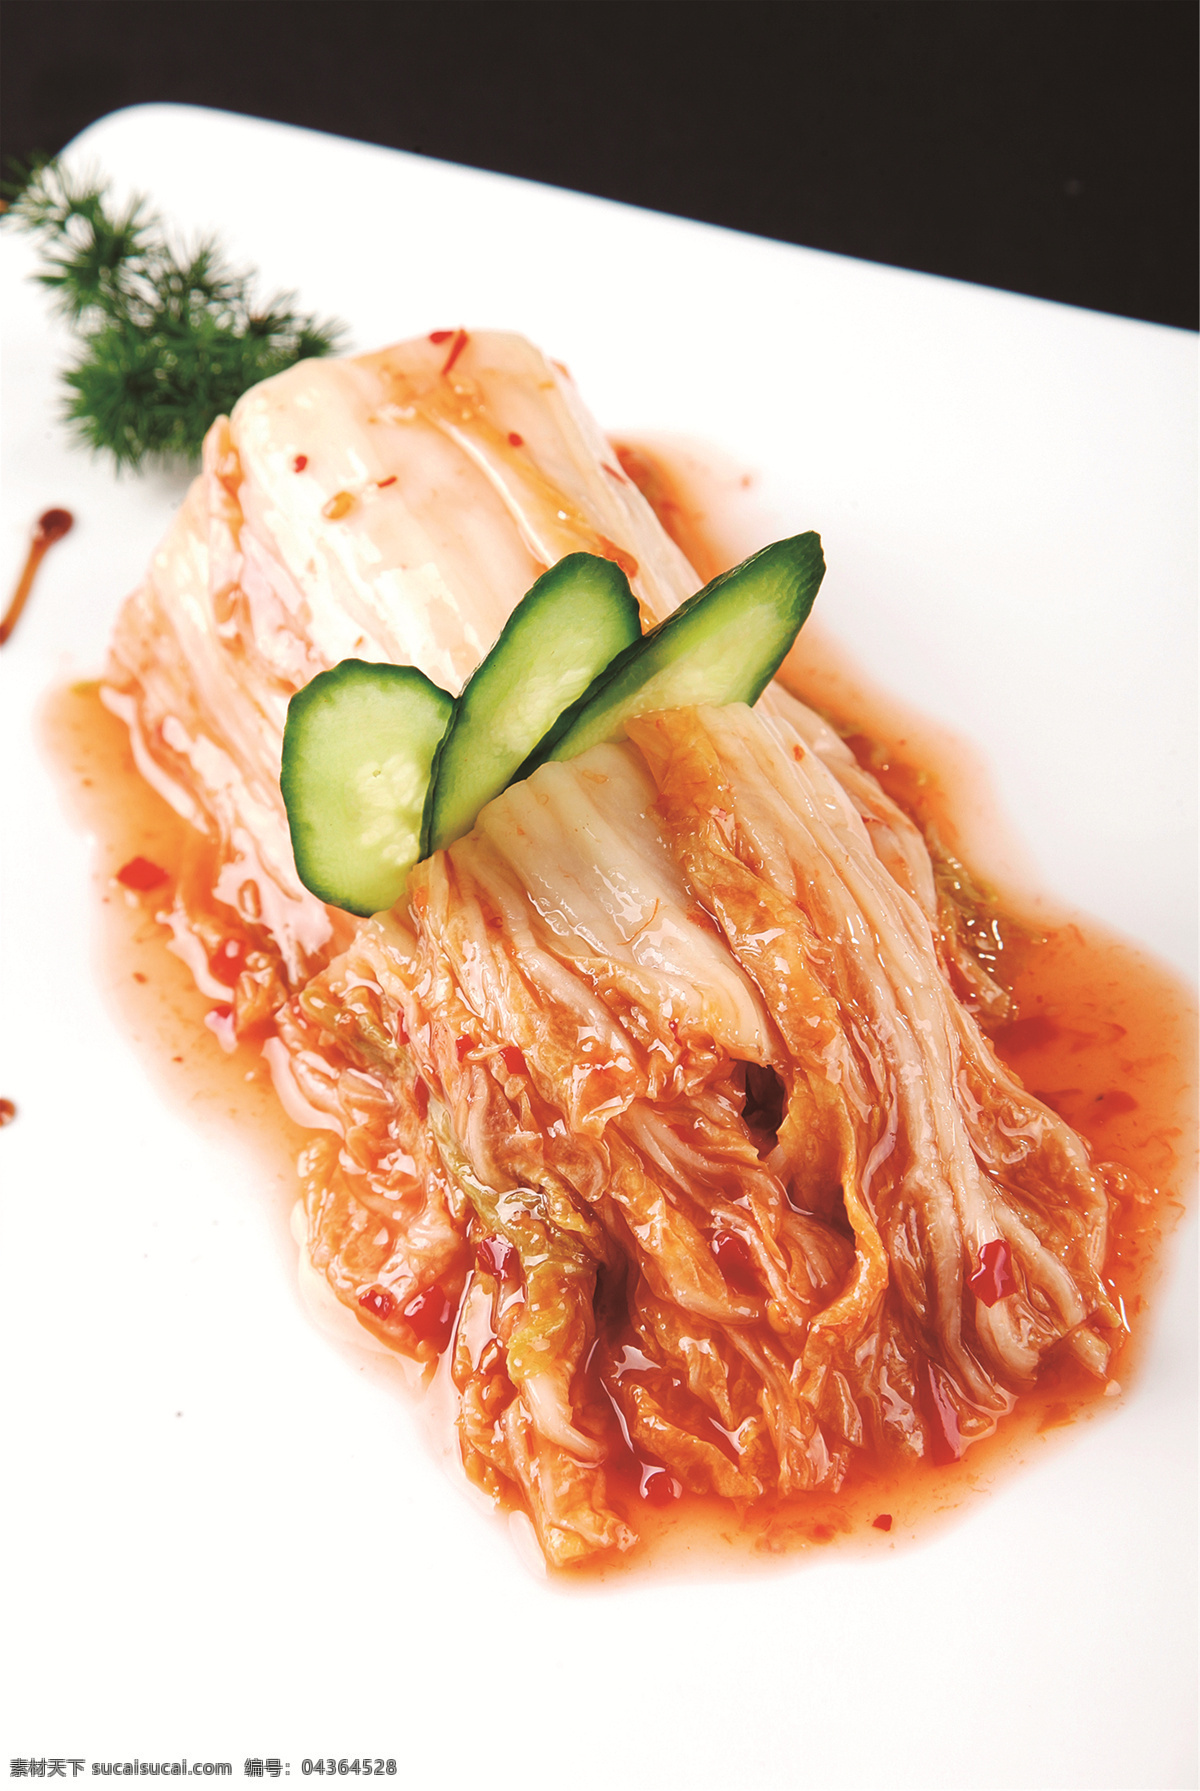 韩国泡菜 美食 传统美食 餐饮美食 高清菜谱用图